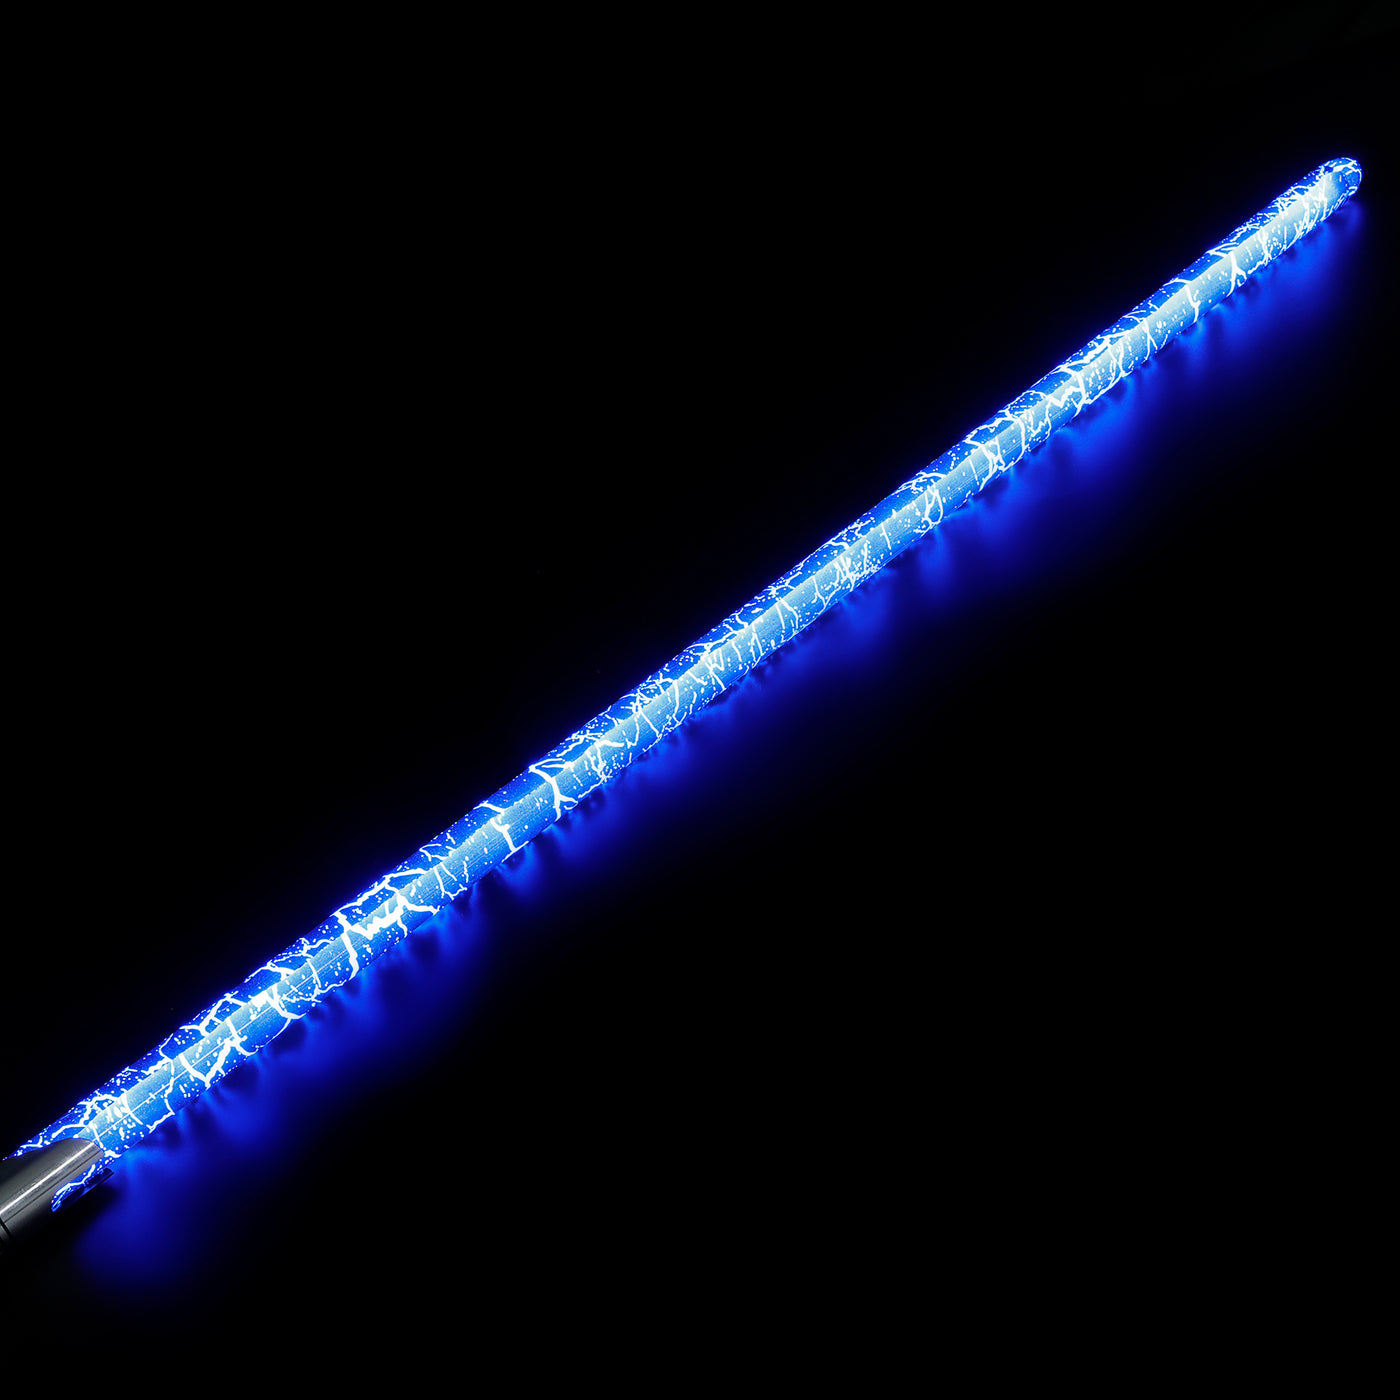 Crackle blade - KenJo Sabers - Star Wars Lightsaber replica Jedi Sith - Best sabershop Europe - Nederland light sabers kopen -